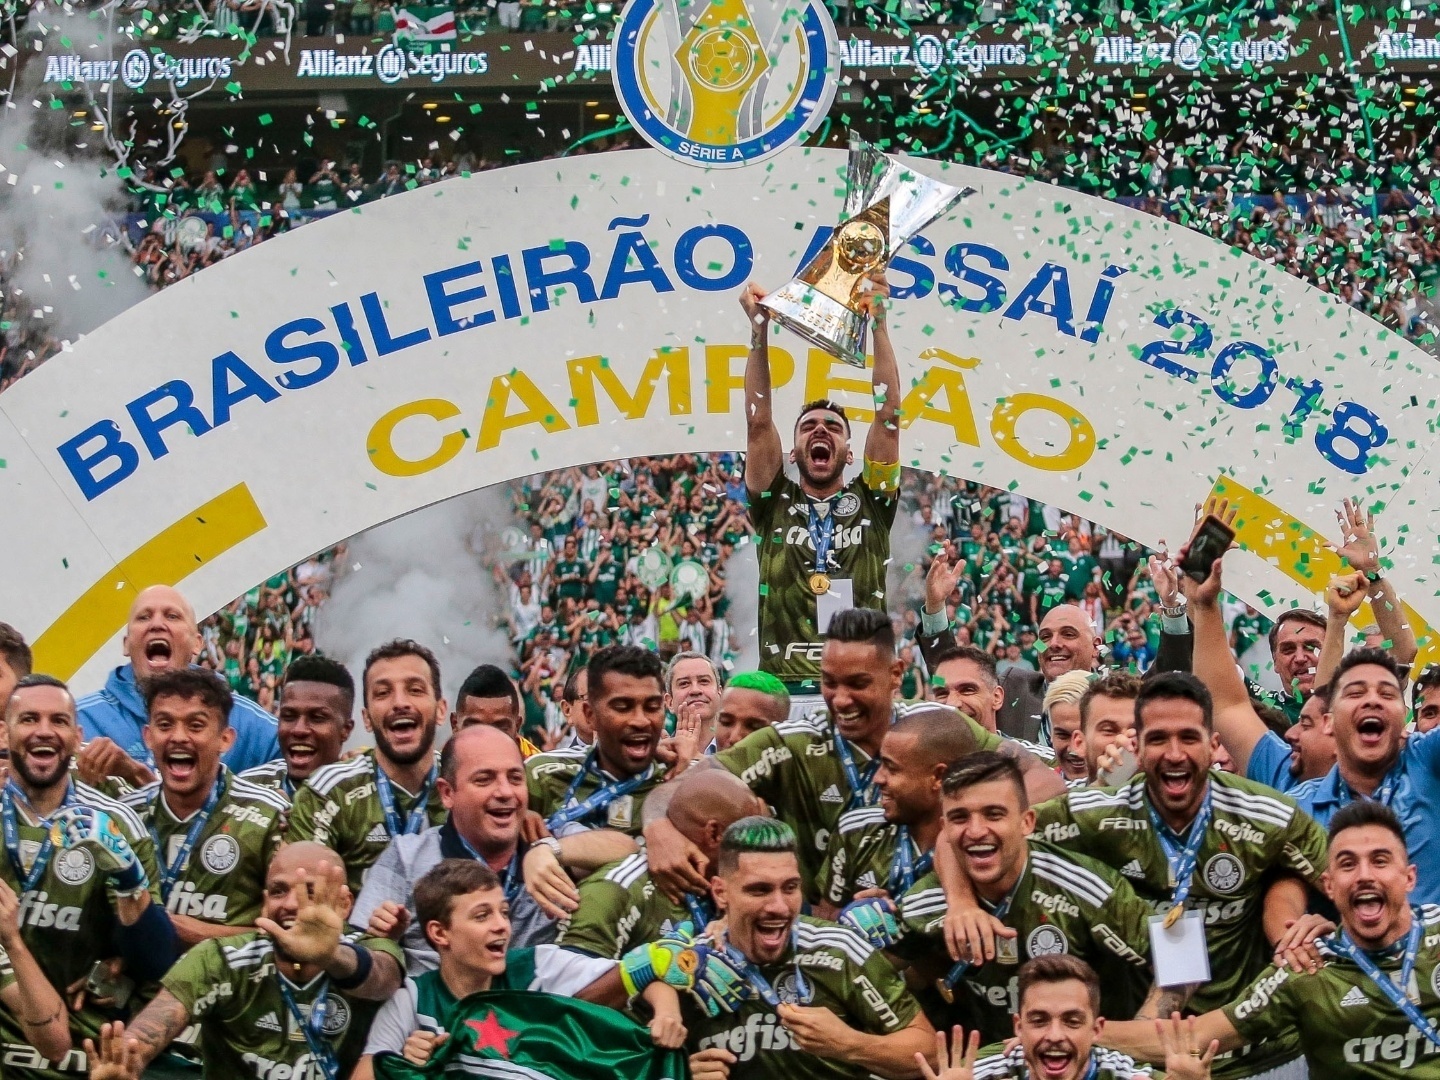 Guia completo: entenda como funciona o Campeonato Brasileiro